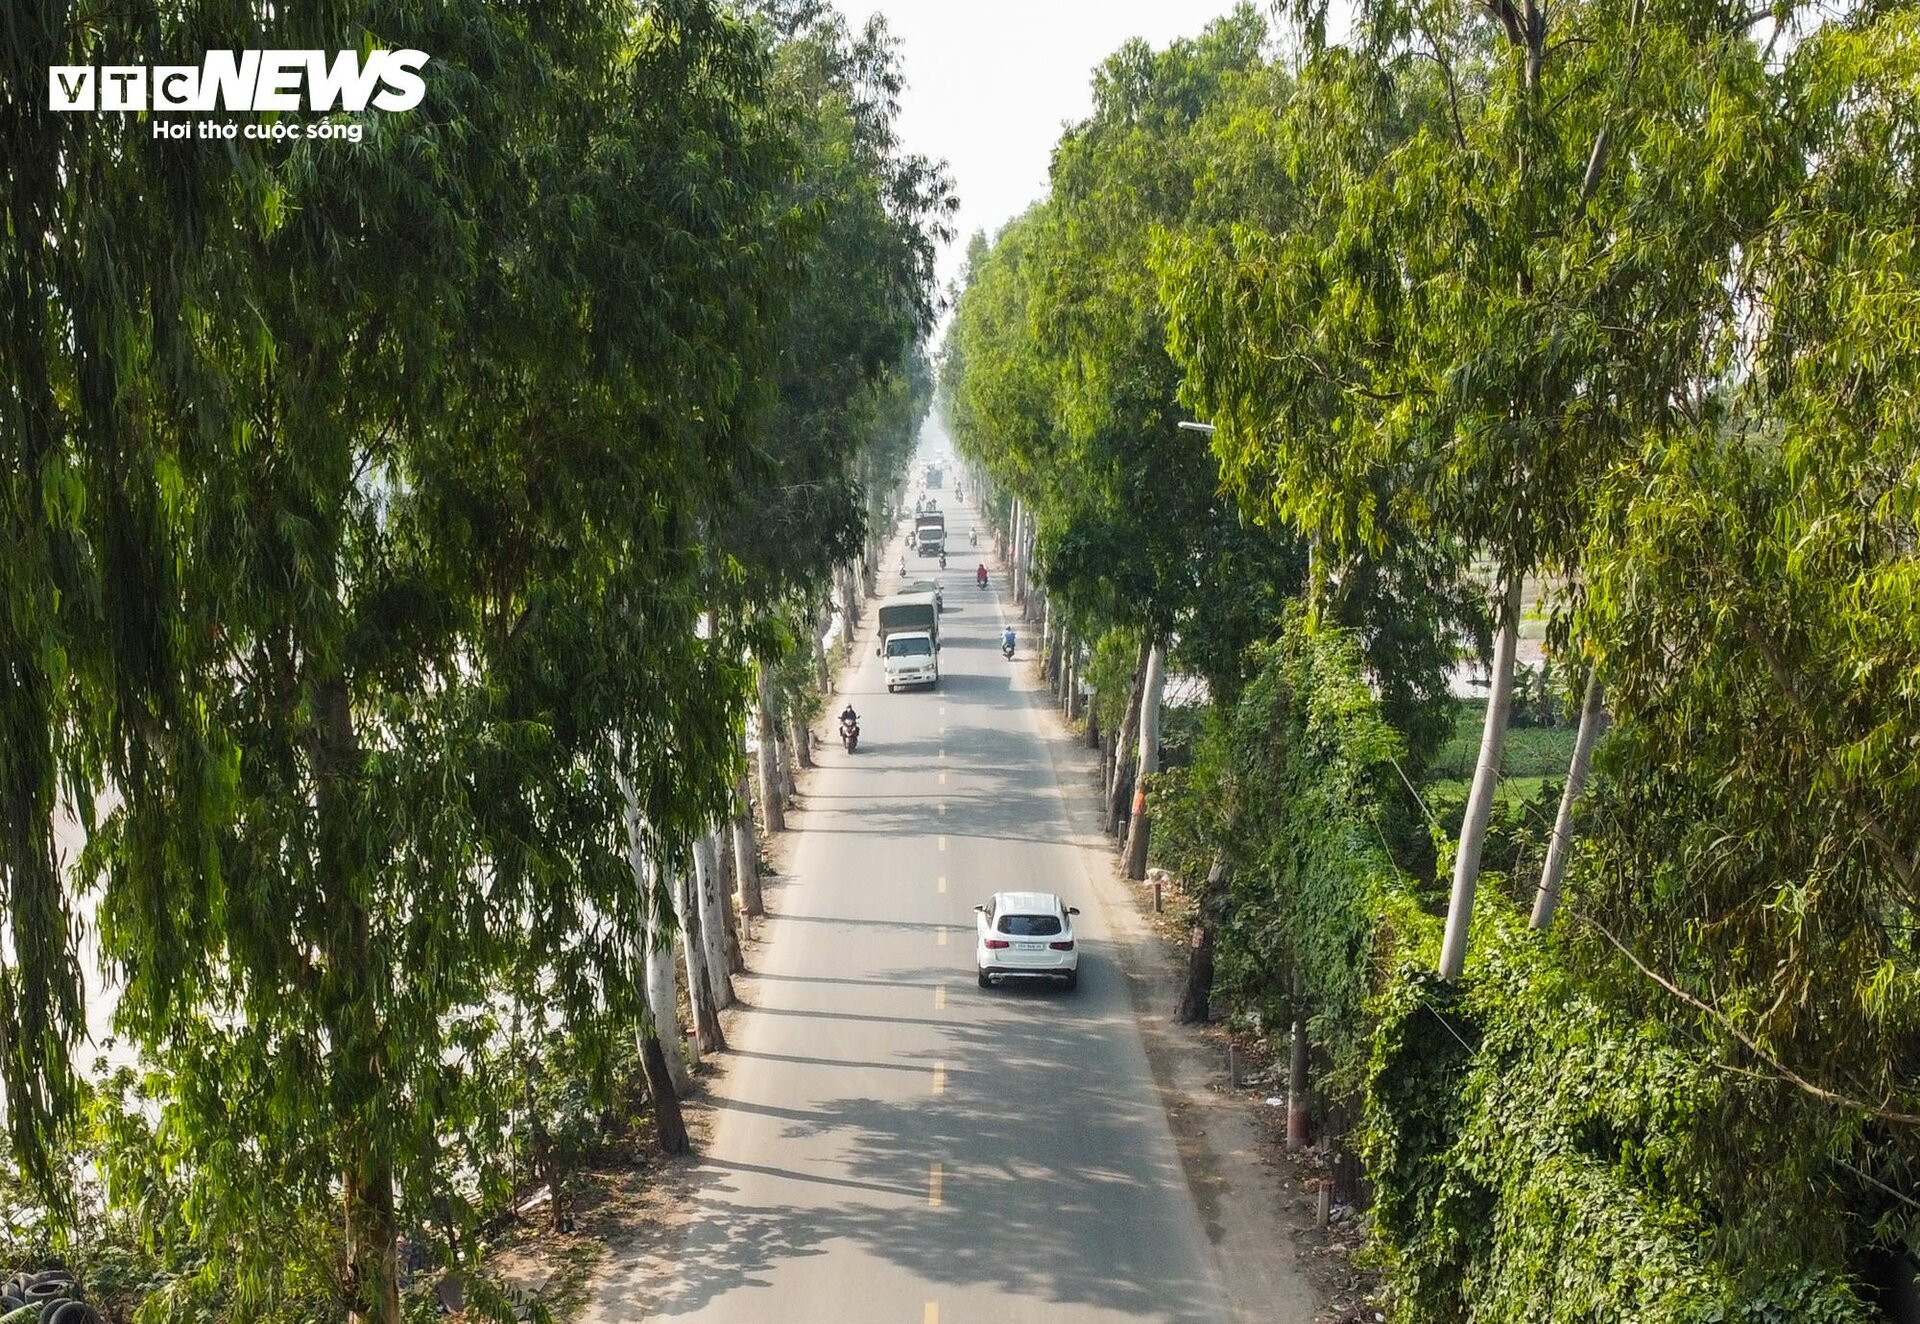 Cận cảnh tuyến đường ở Hà Nội sắp được đầu tư 2.800 tỷ đồng để mở rộng- Ảnh 10.